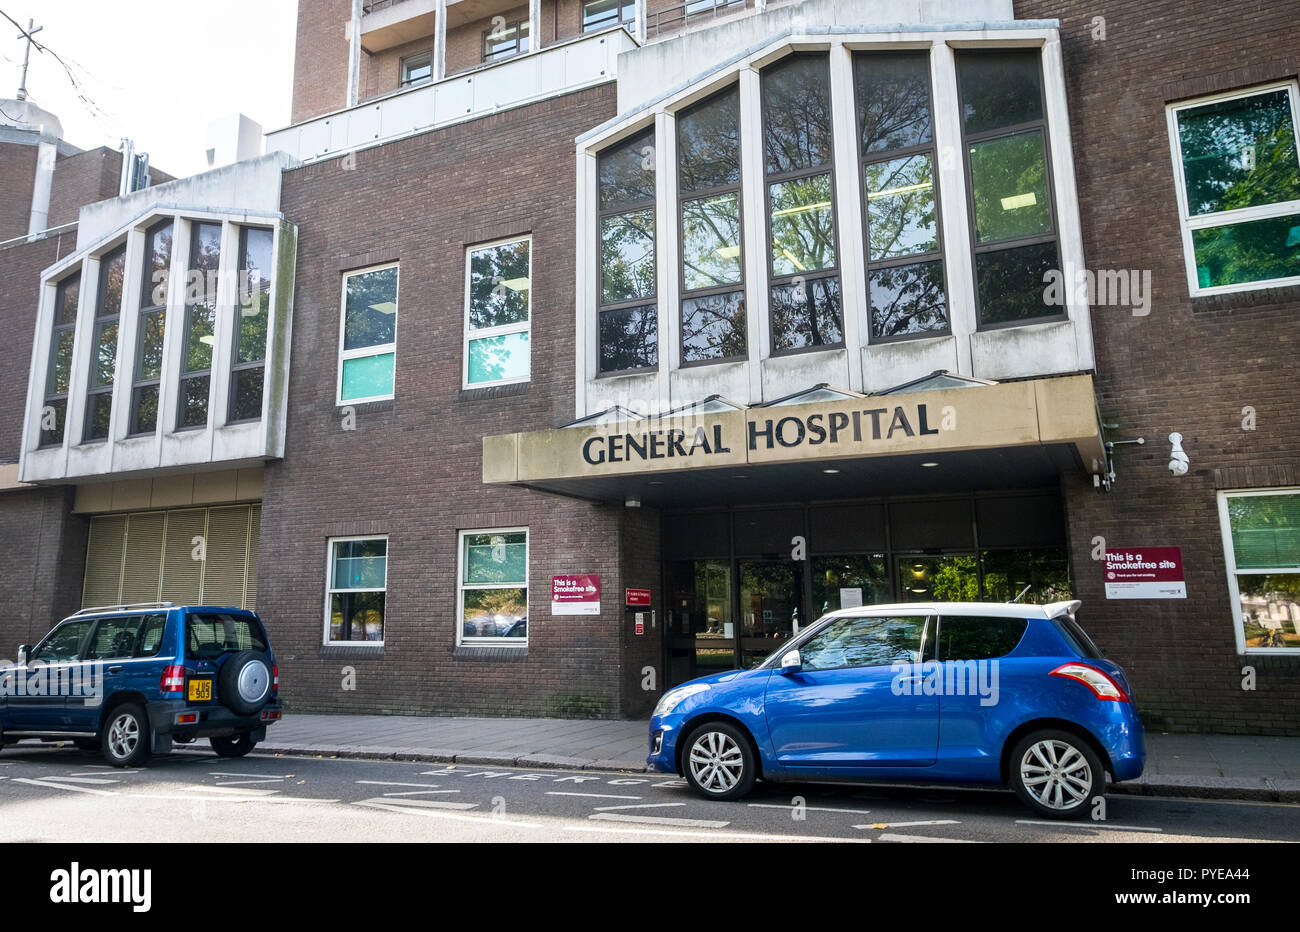 General Hospital, Saint Helier, Jersey 